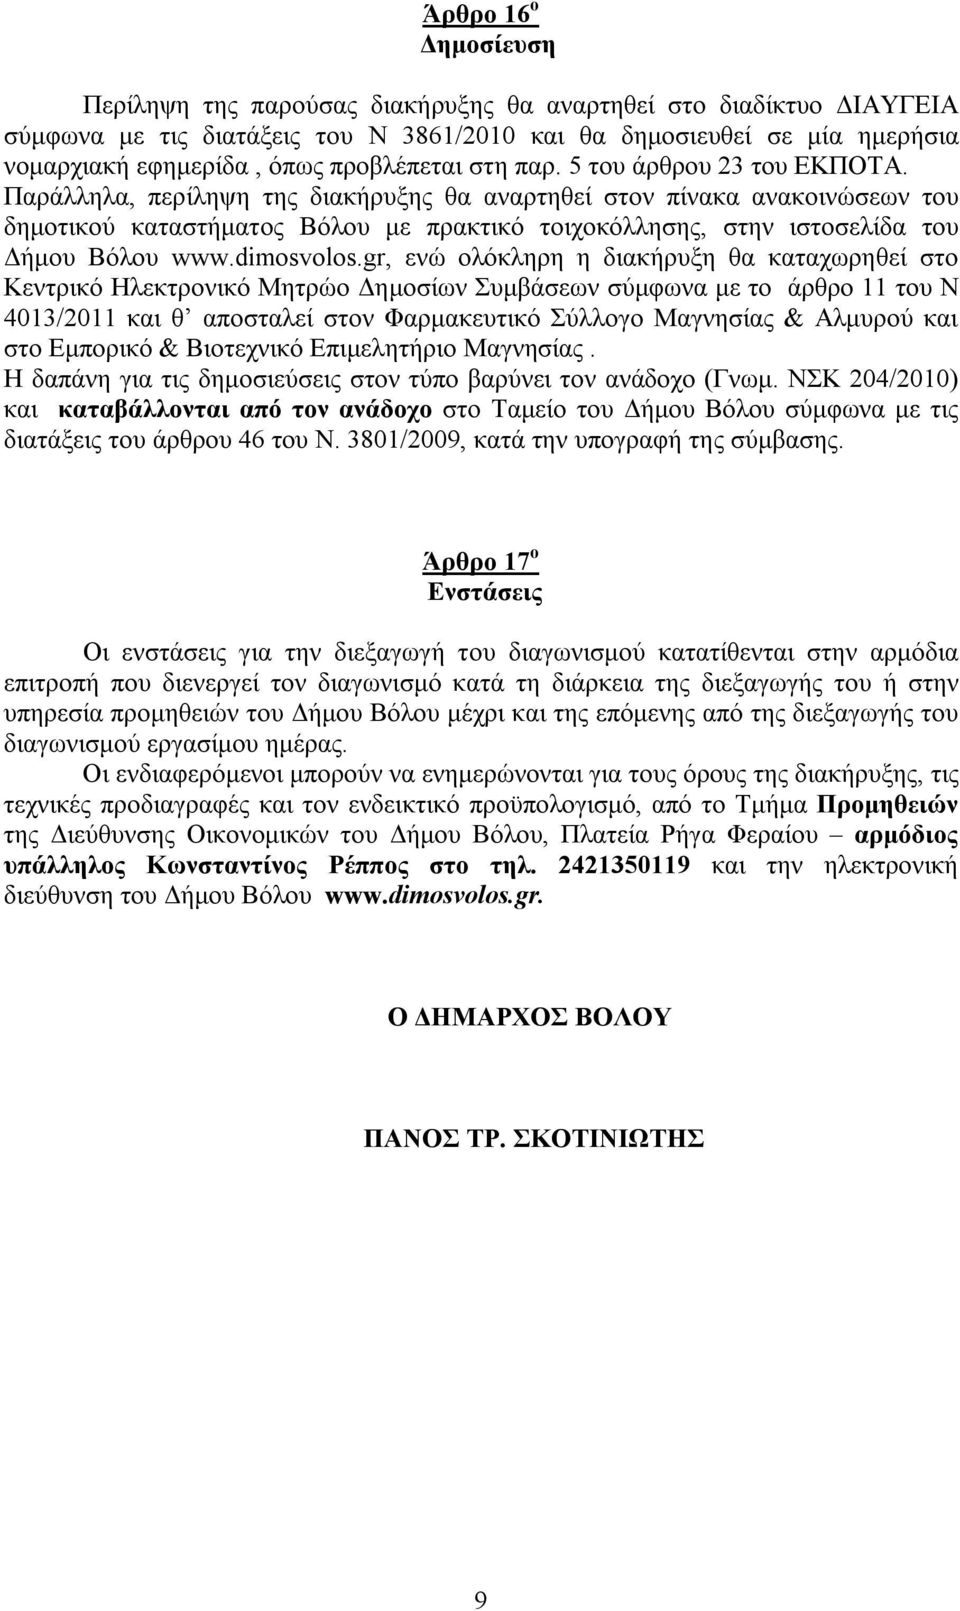 Παράλληλα, περίληψη της διακήρυξης θα αναρτηθεί στον πίνακα ανακοινώσεων του δημοτικού καταστήματος Βόλου με πρακτικό τοιχοκόλλησης, στην ιστοσελίδα του Δήμου Βόλου www.dimosvolos.